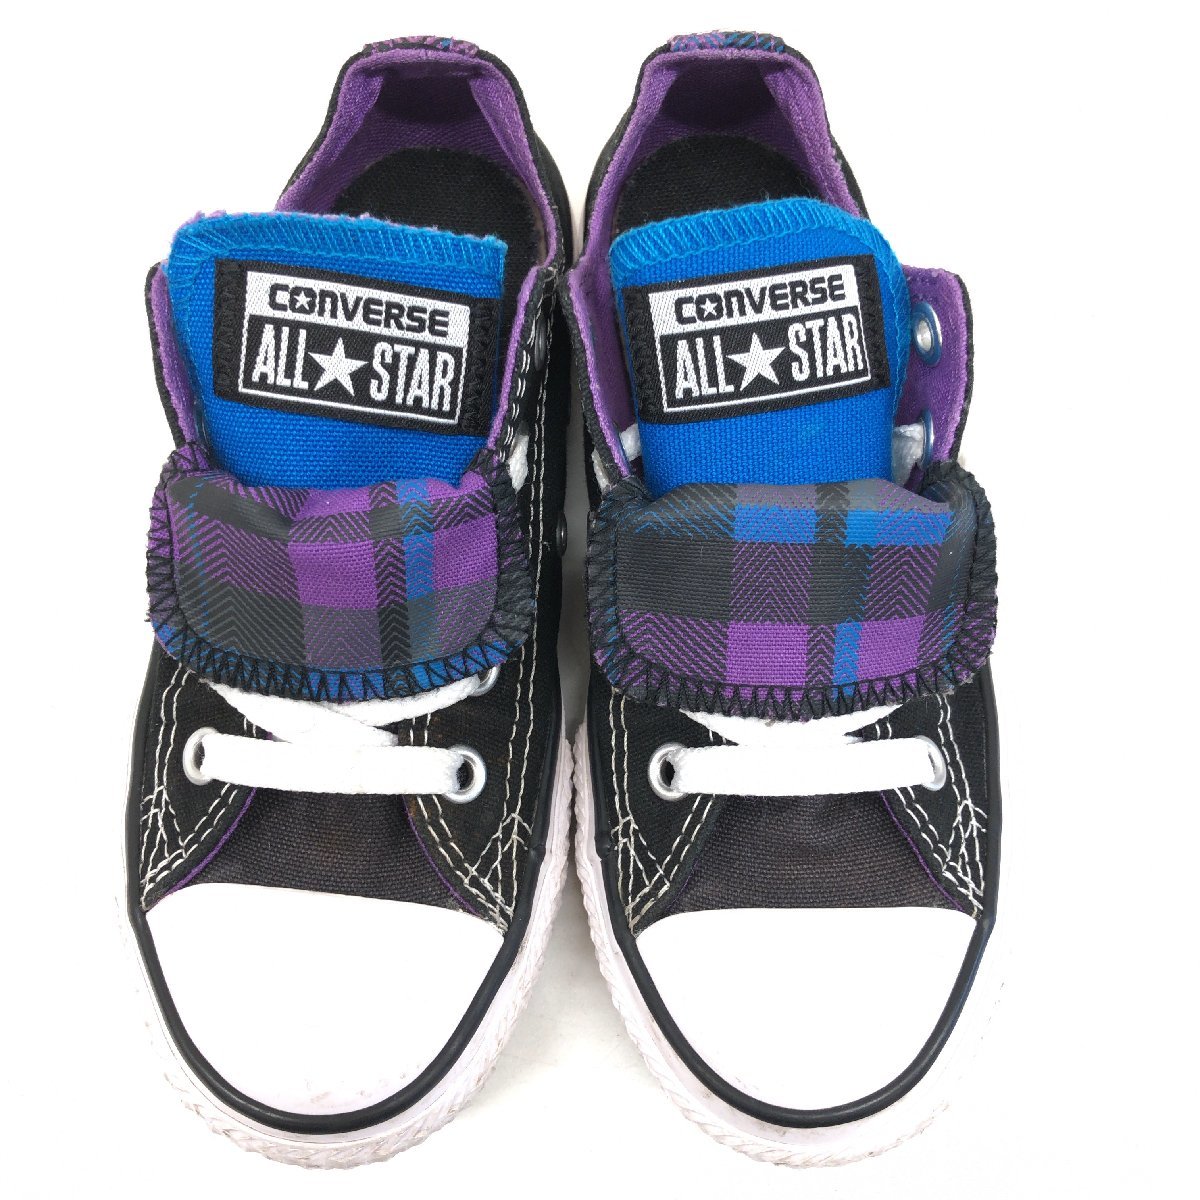 *CONVERSE Converse все Star Play do двойной язык парусина low cut спортивные туфли 18cm чёрный черный спортивная обувь Kids Junior 